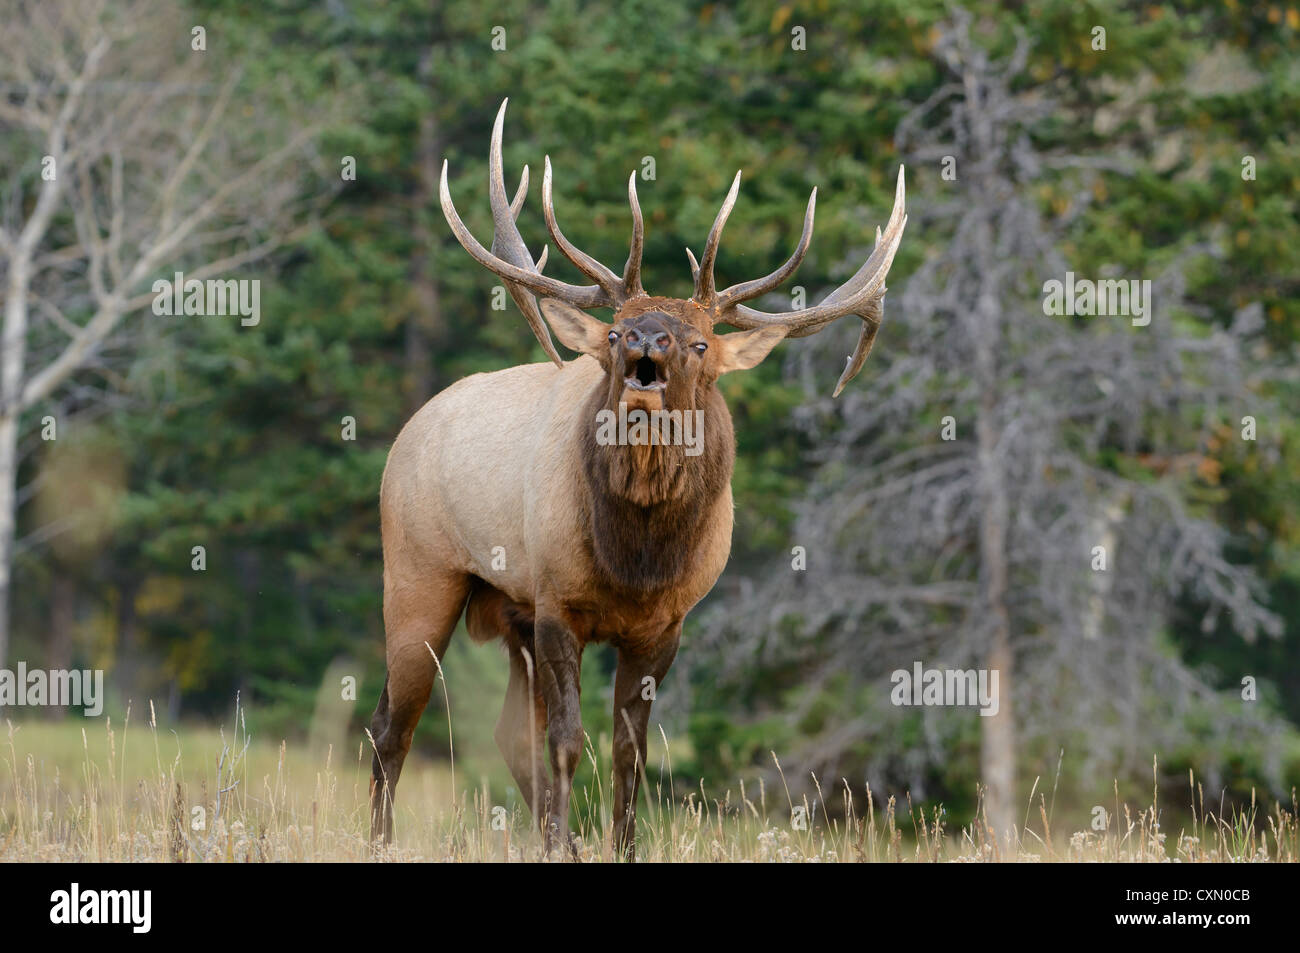 A Bugling Bull Elk (Cervus elaphus) in the Northern Rockies of Western North America. Stock Photo